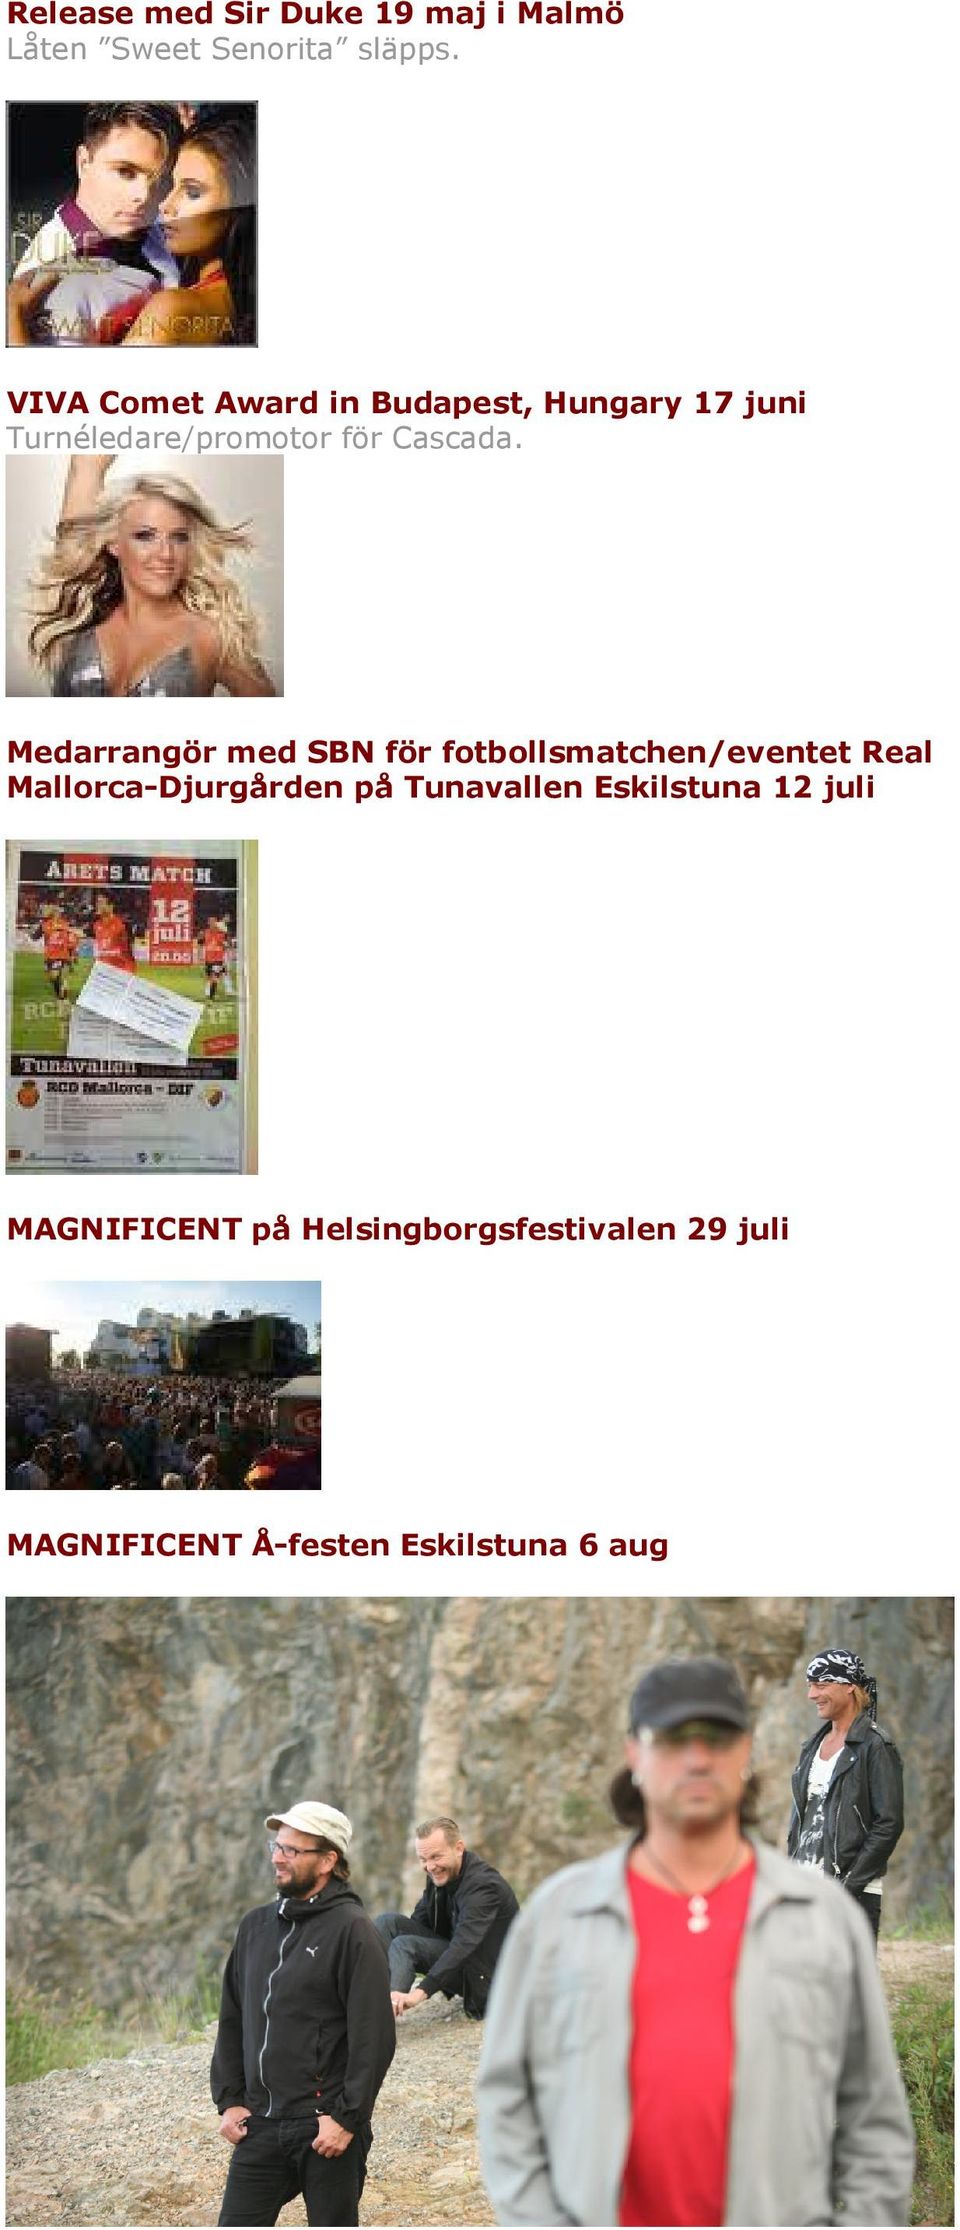 Medarrangör med SBN för fotbollsmatchen/eventet Real Mallorca-Djurgården på